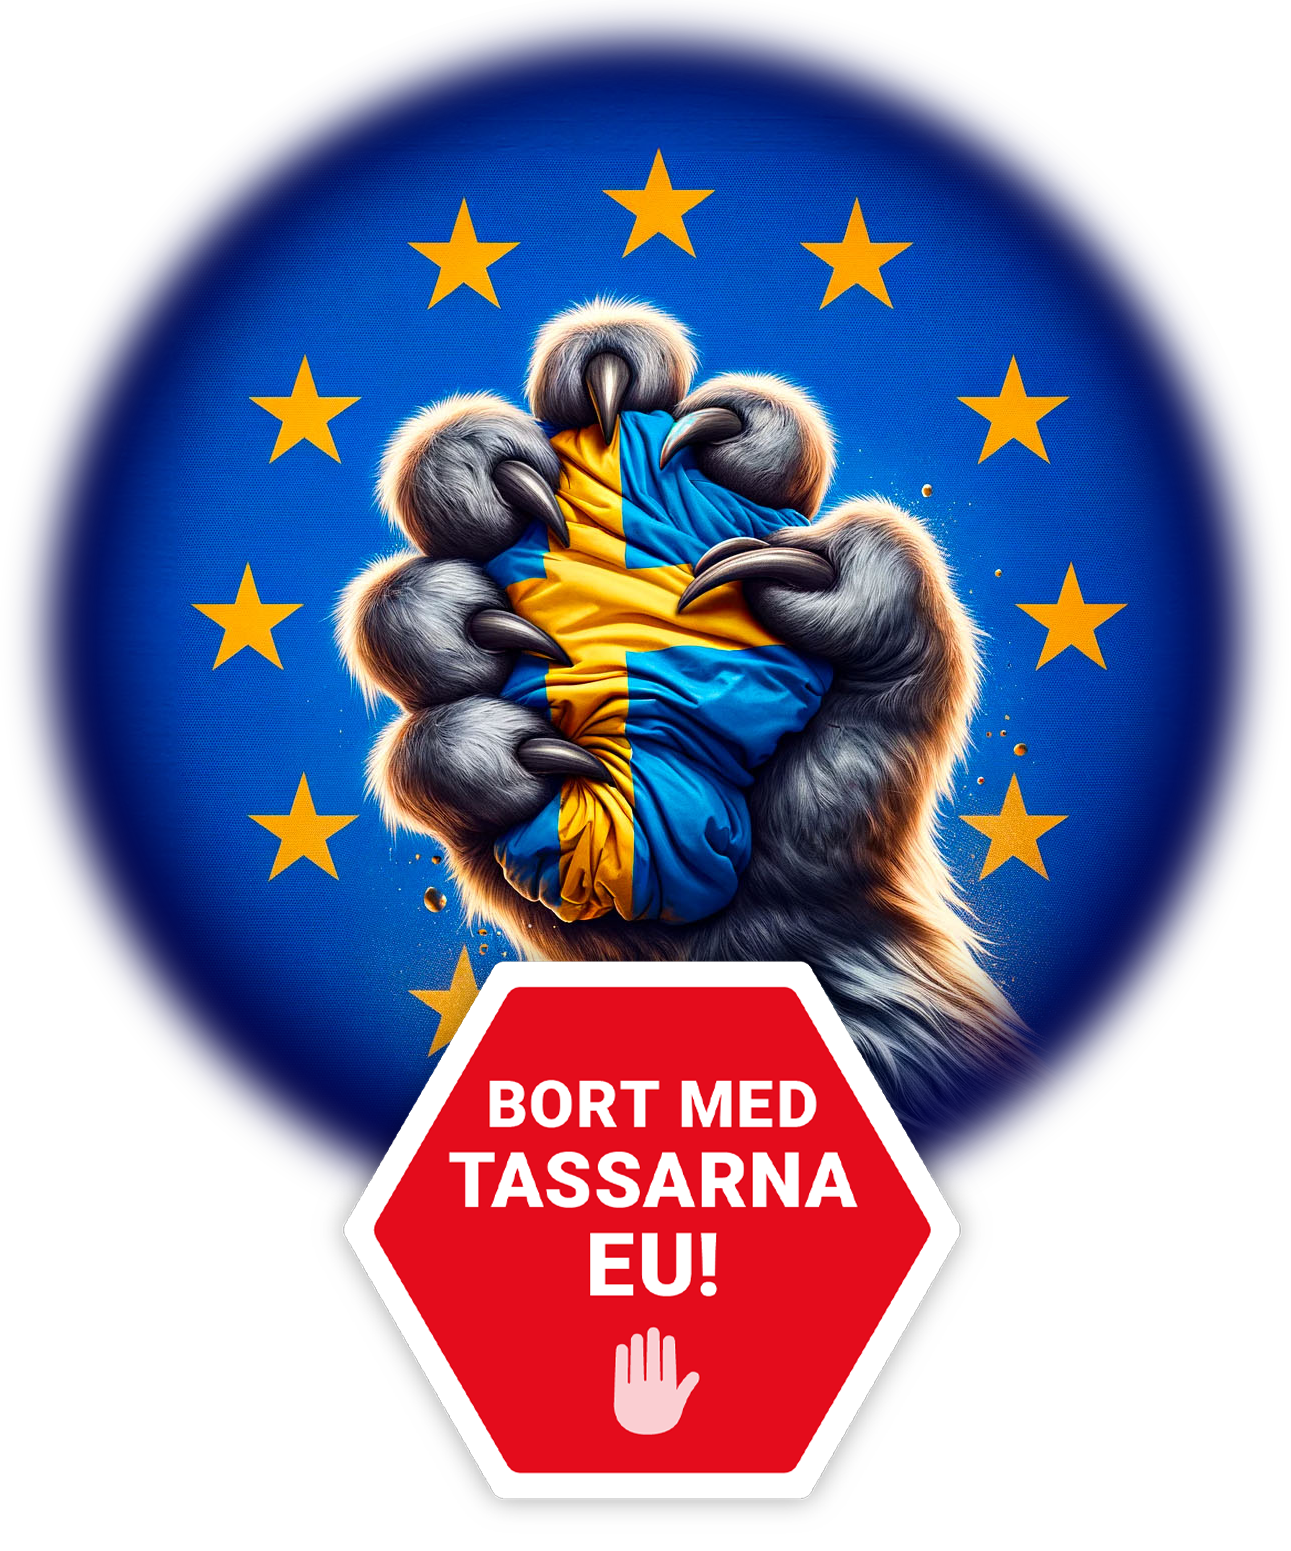 Bort med tassarna EU!